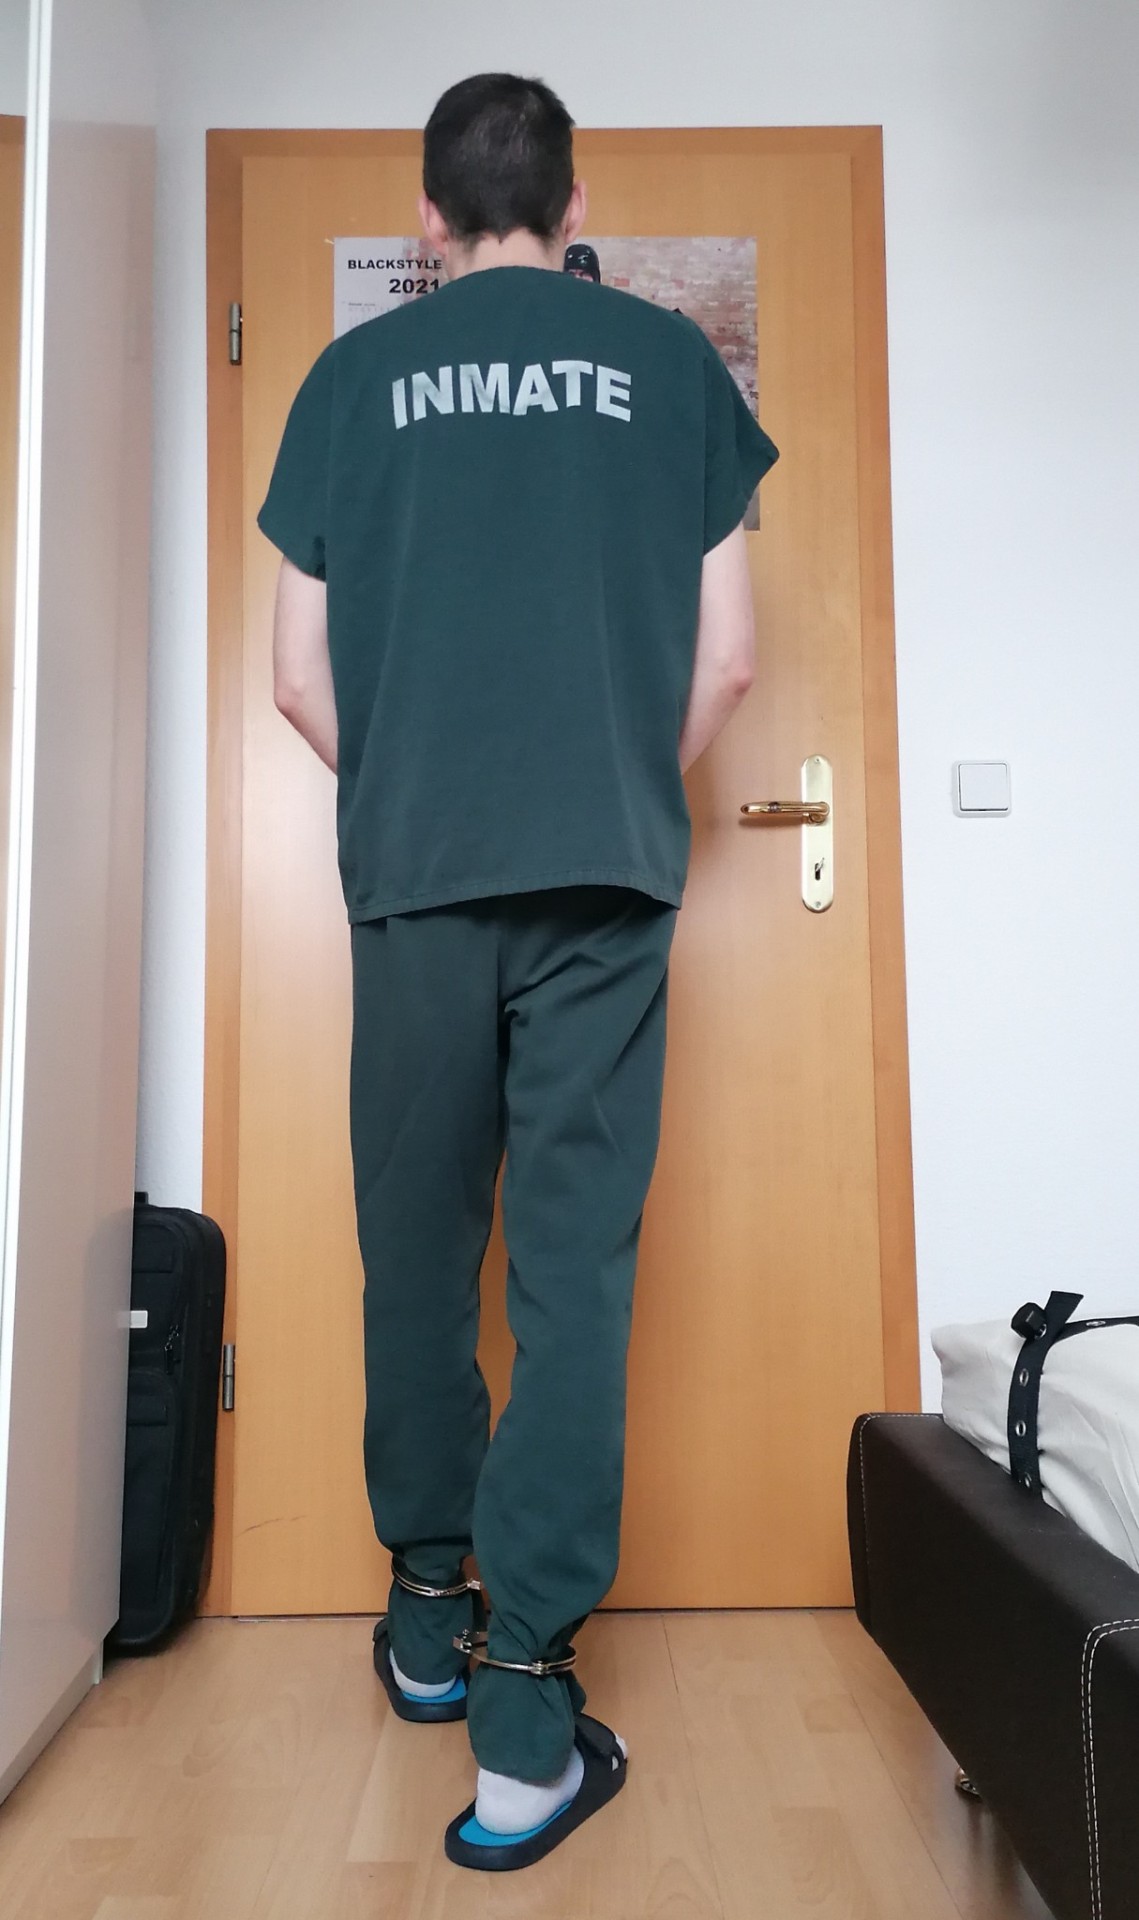 Unbetitelt — Chilling in my prison gear. Which cuffs are